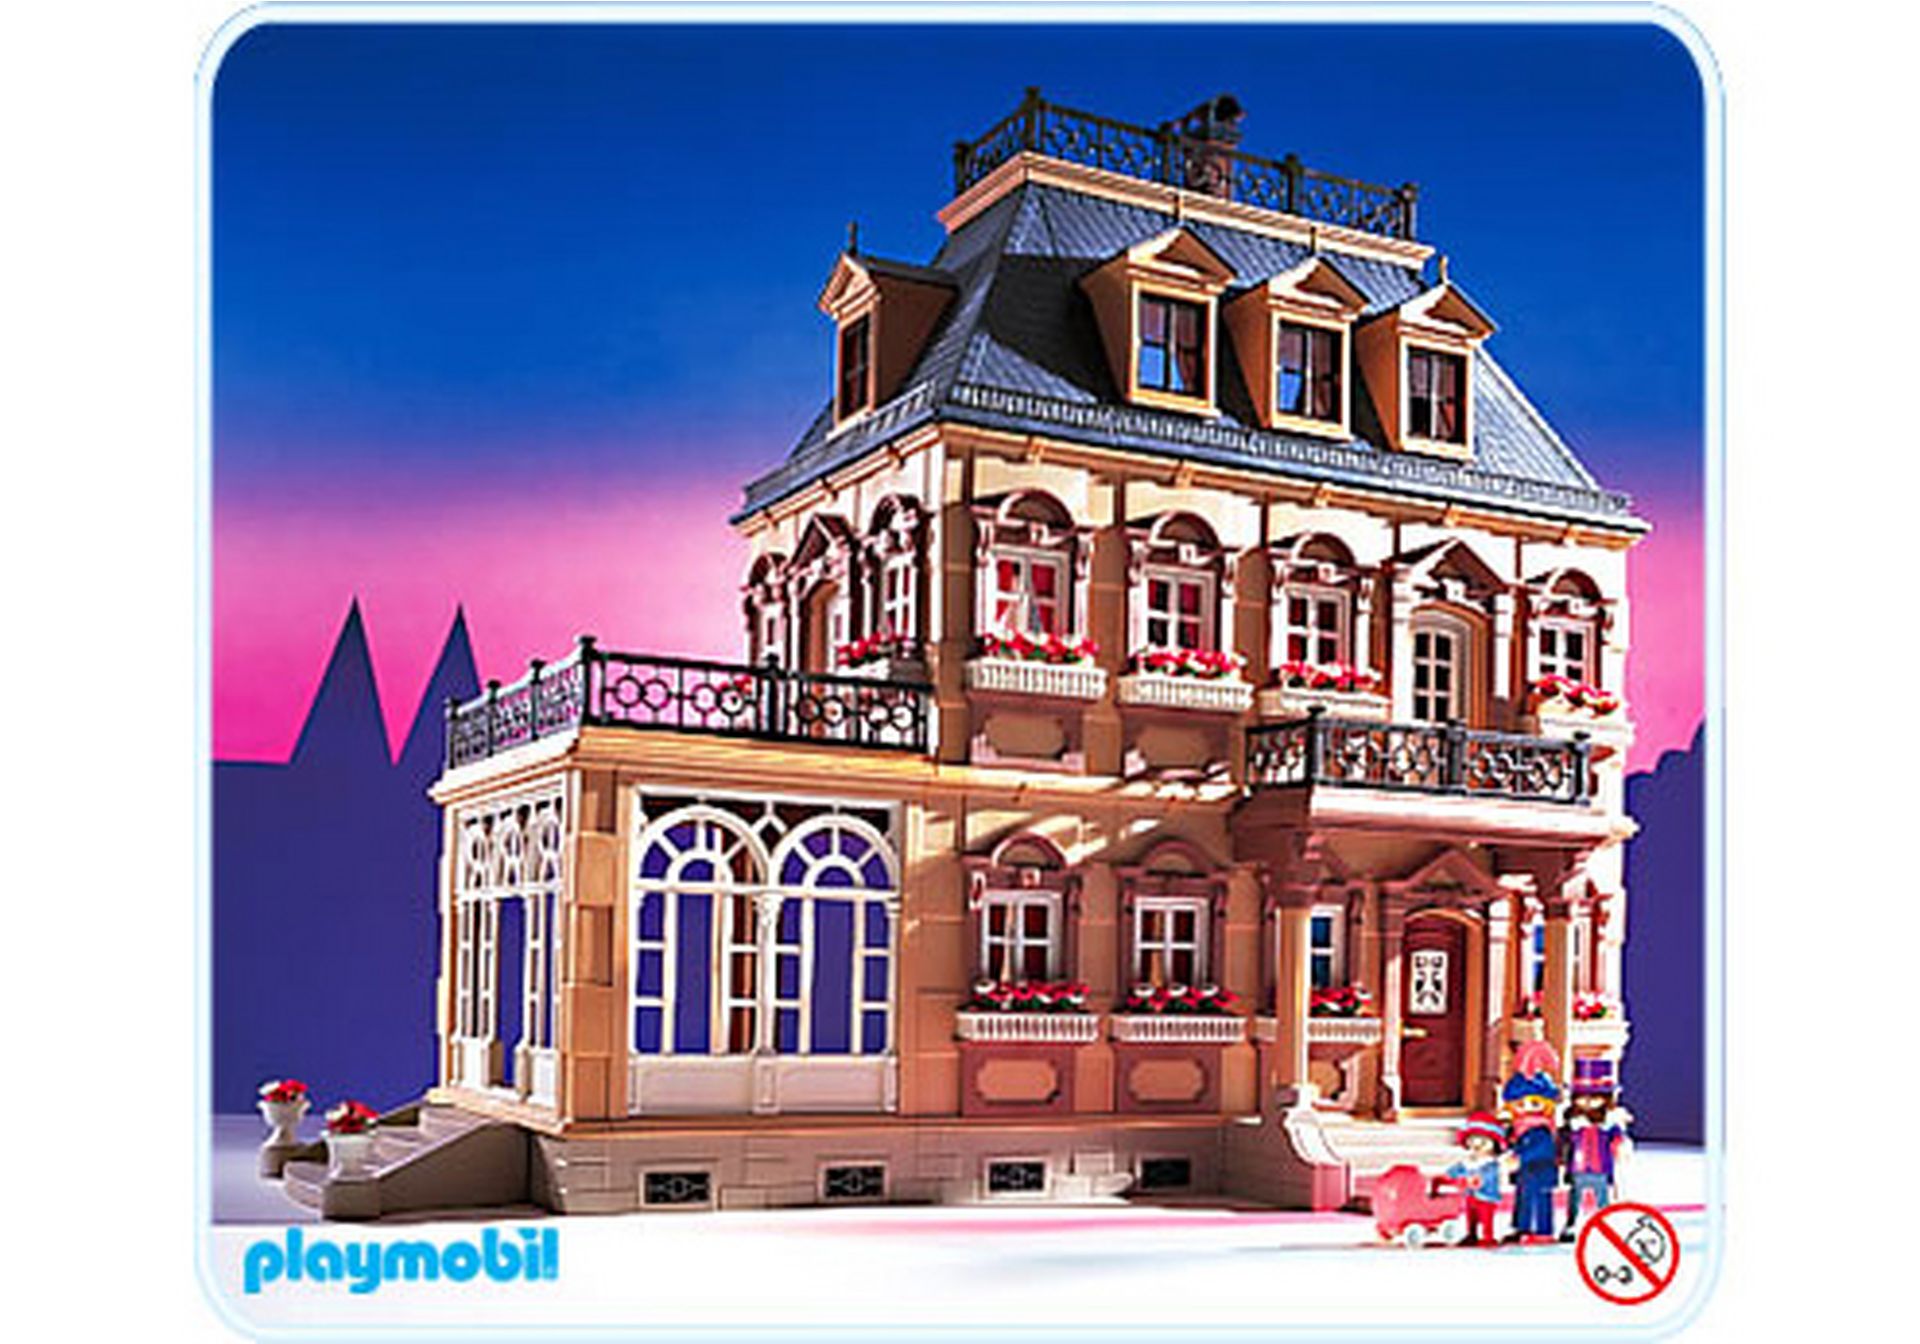 Playmobil Nostalgie Figur Baby weiss leicht verfärbt Puppenhaus 5300